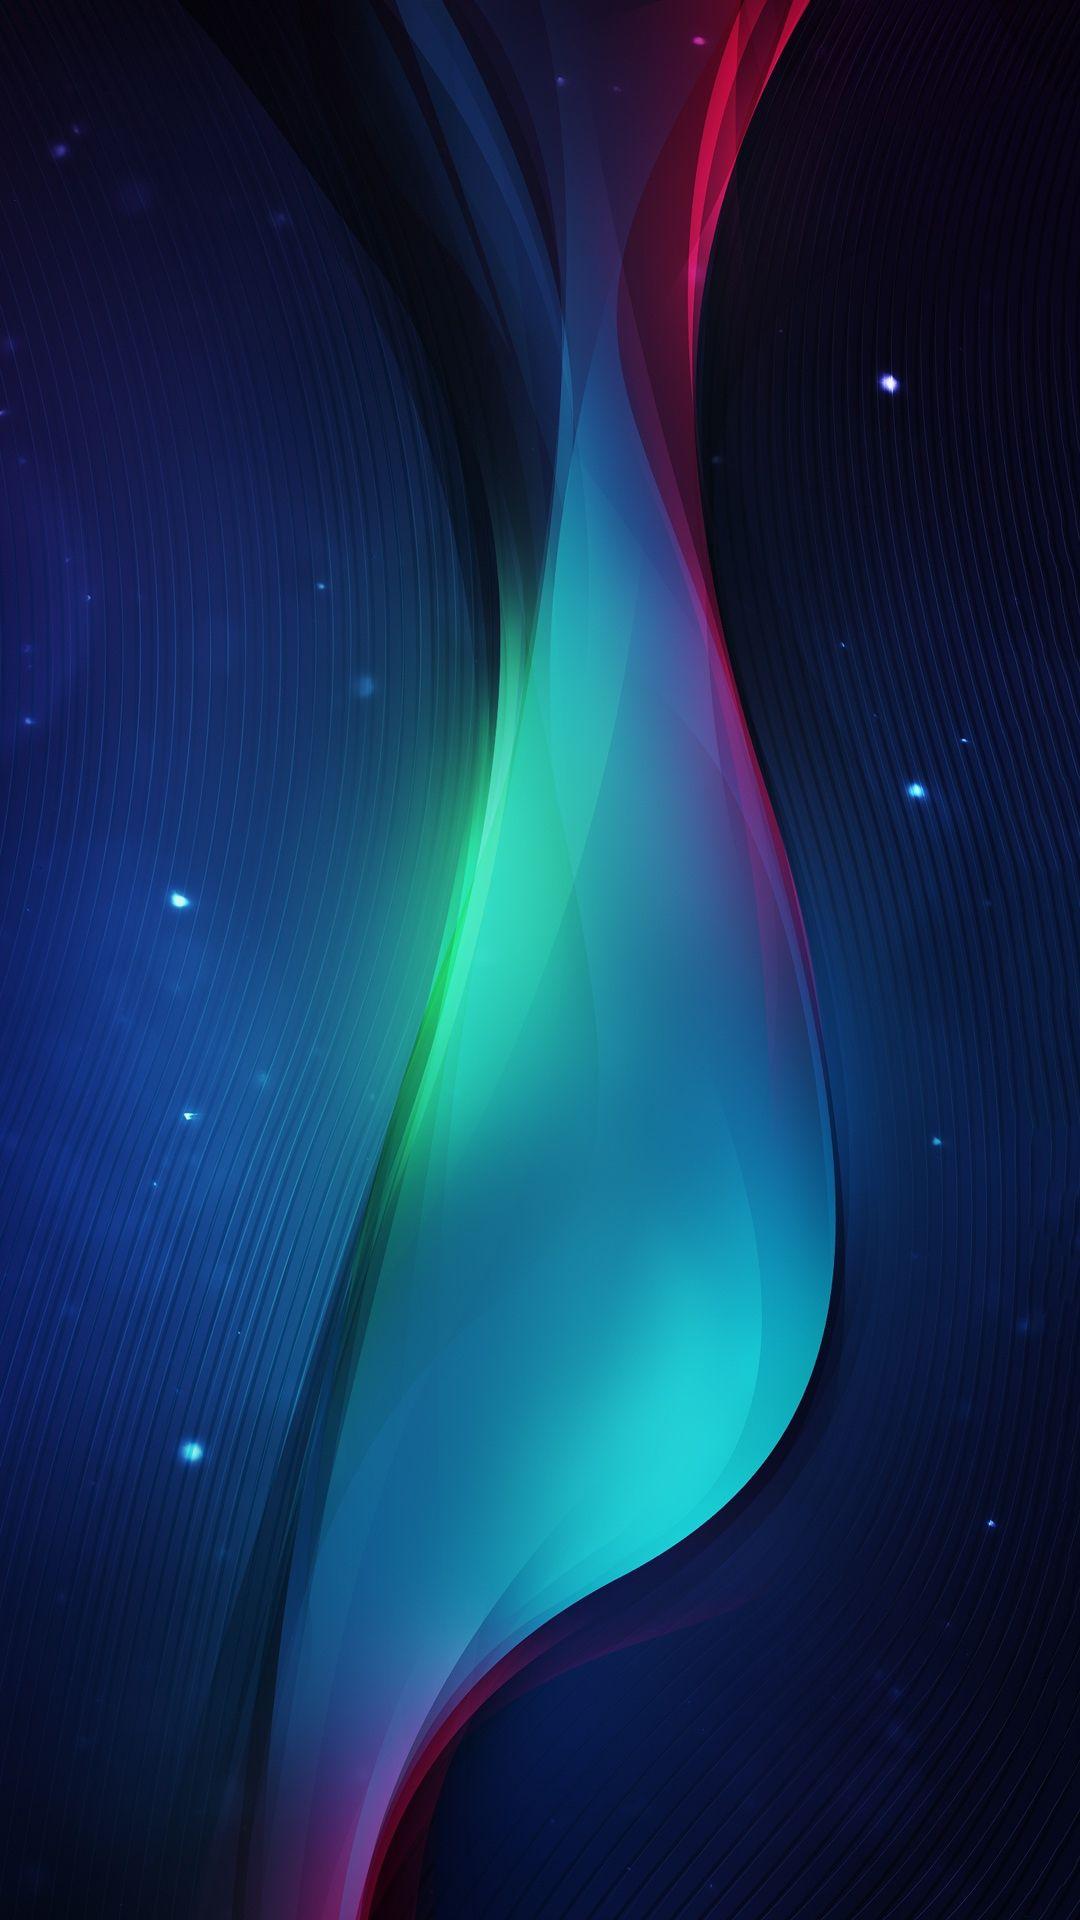 Tải xuống miễn phí Hình nền Android đầy màu sắc theo chiều dọc đầy màu sắc trừu tượng 1080x1920